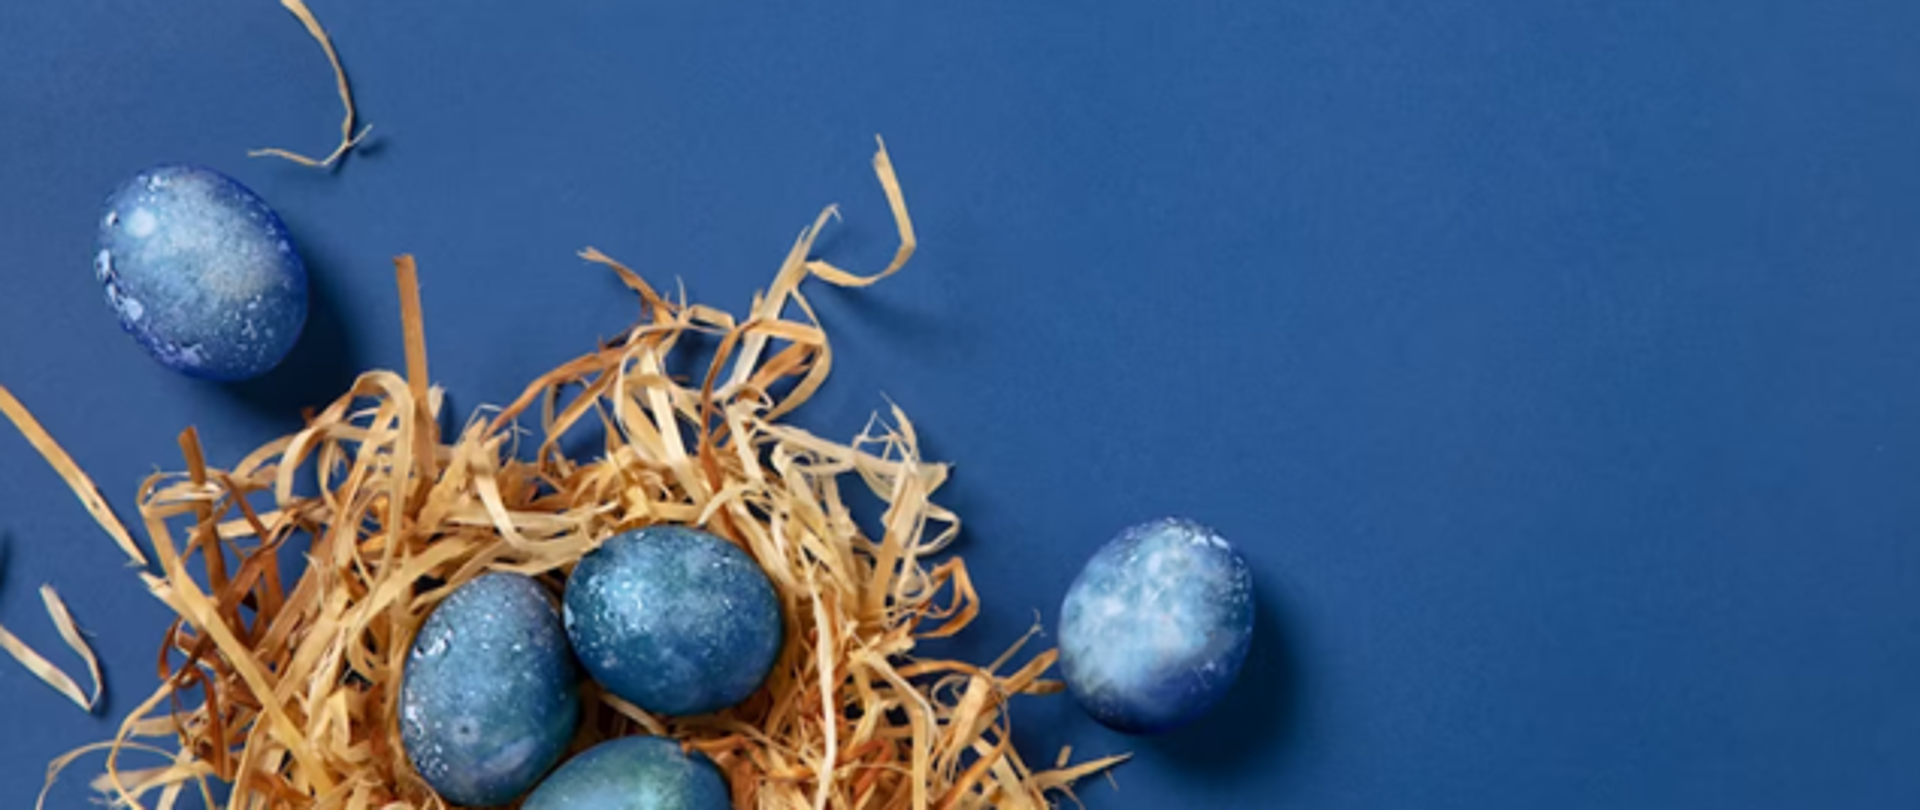 Zdjęcie przedstawia ułożone na niebieskim tle trociny oraz niebieskie jajka.